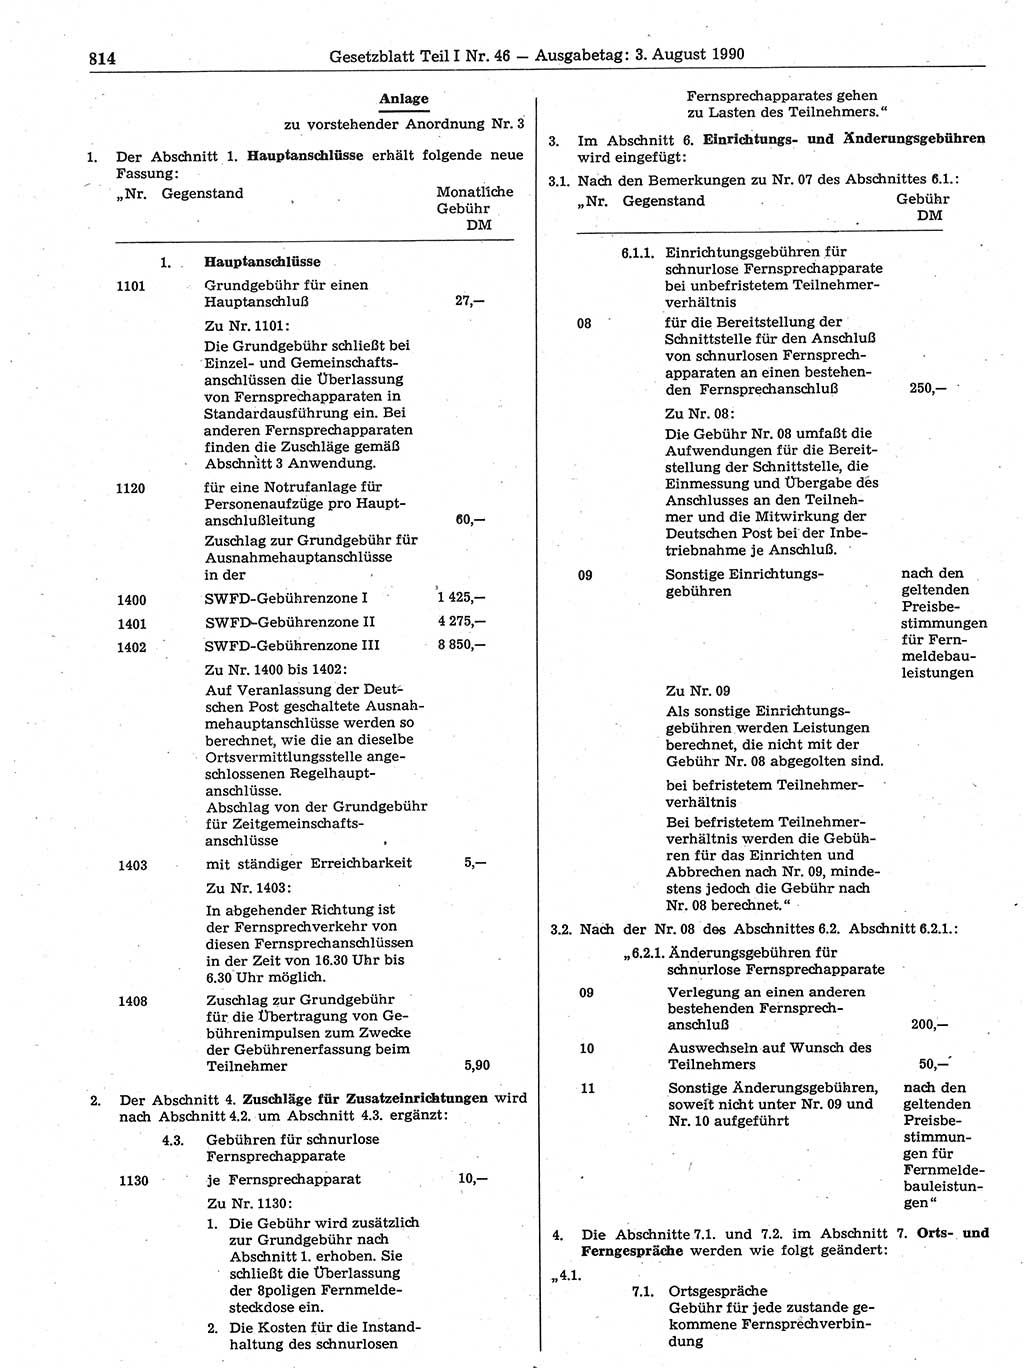 Gesetzblatt (GBl.) der Deutschen Demokratischen Republik (DDR) Teil Ⅰ 1990, Seite 814 (GBl. DDR Ⅰ 1990, S. 814)